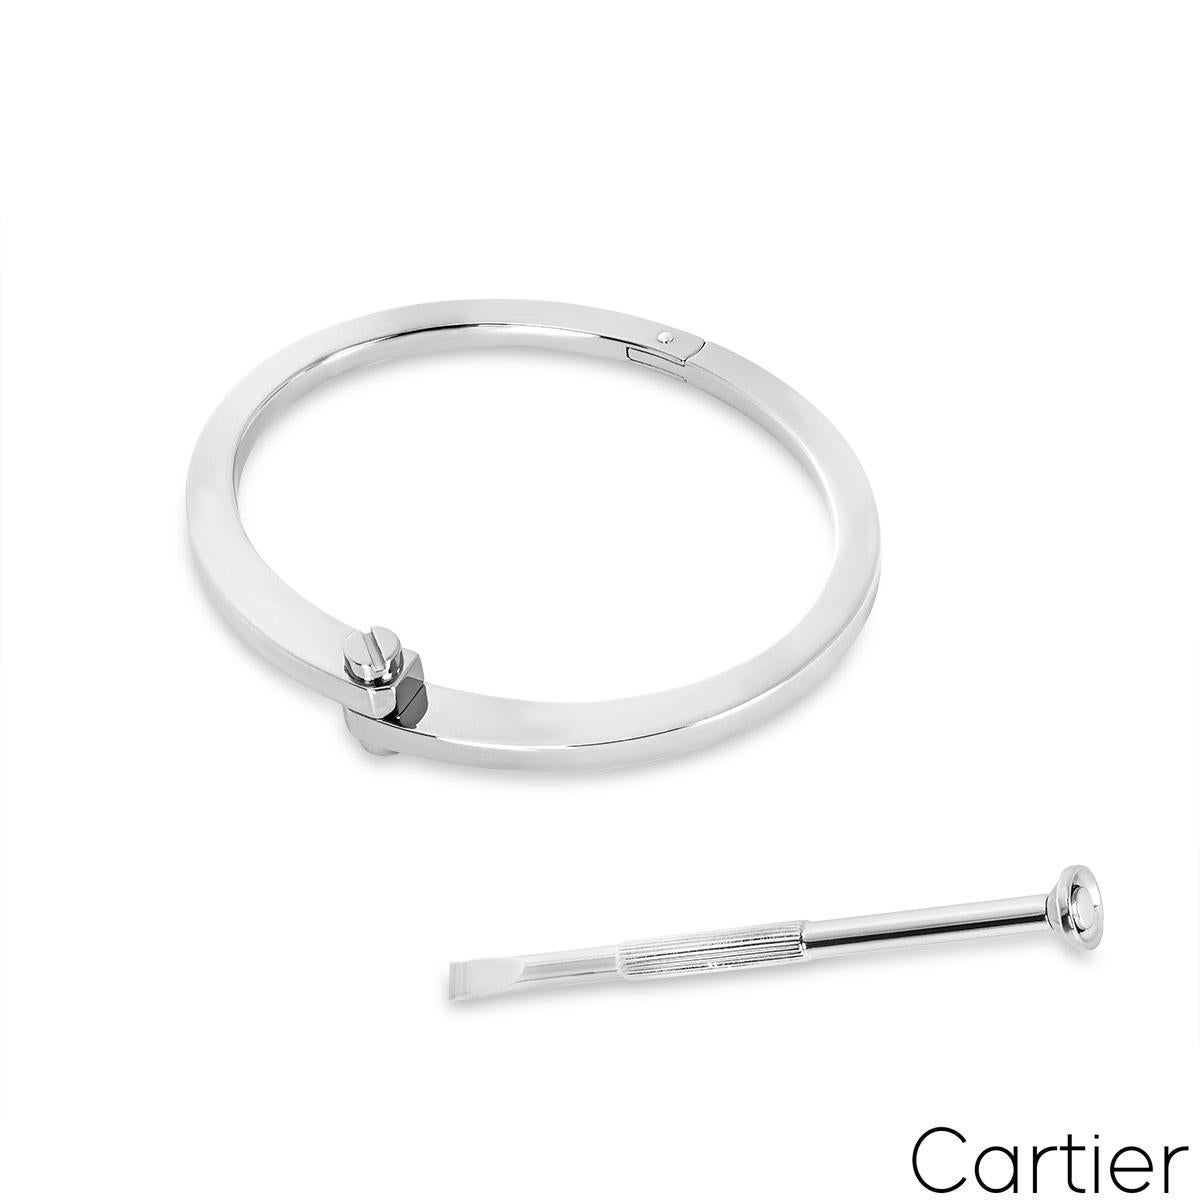  Cartier Bracelet menotte en or blanc Unisexe 